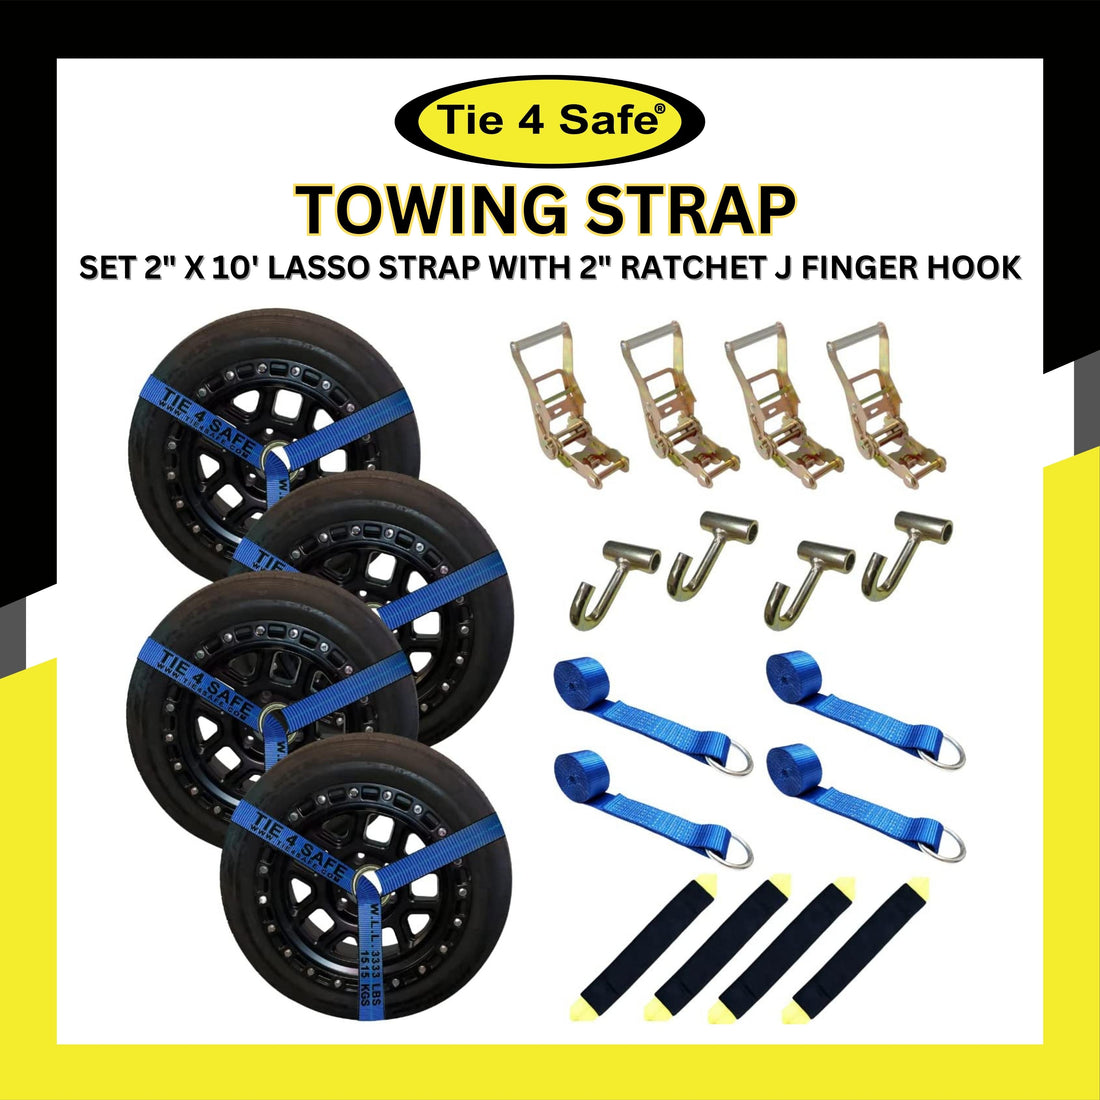 4 Set 2 x 10' Lasso Strap With 2 Ratchet J Finger Hook – Tie 4 Safe